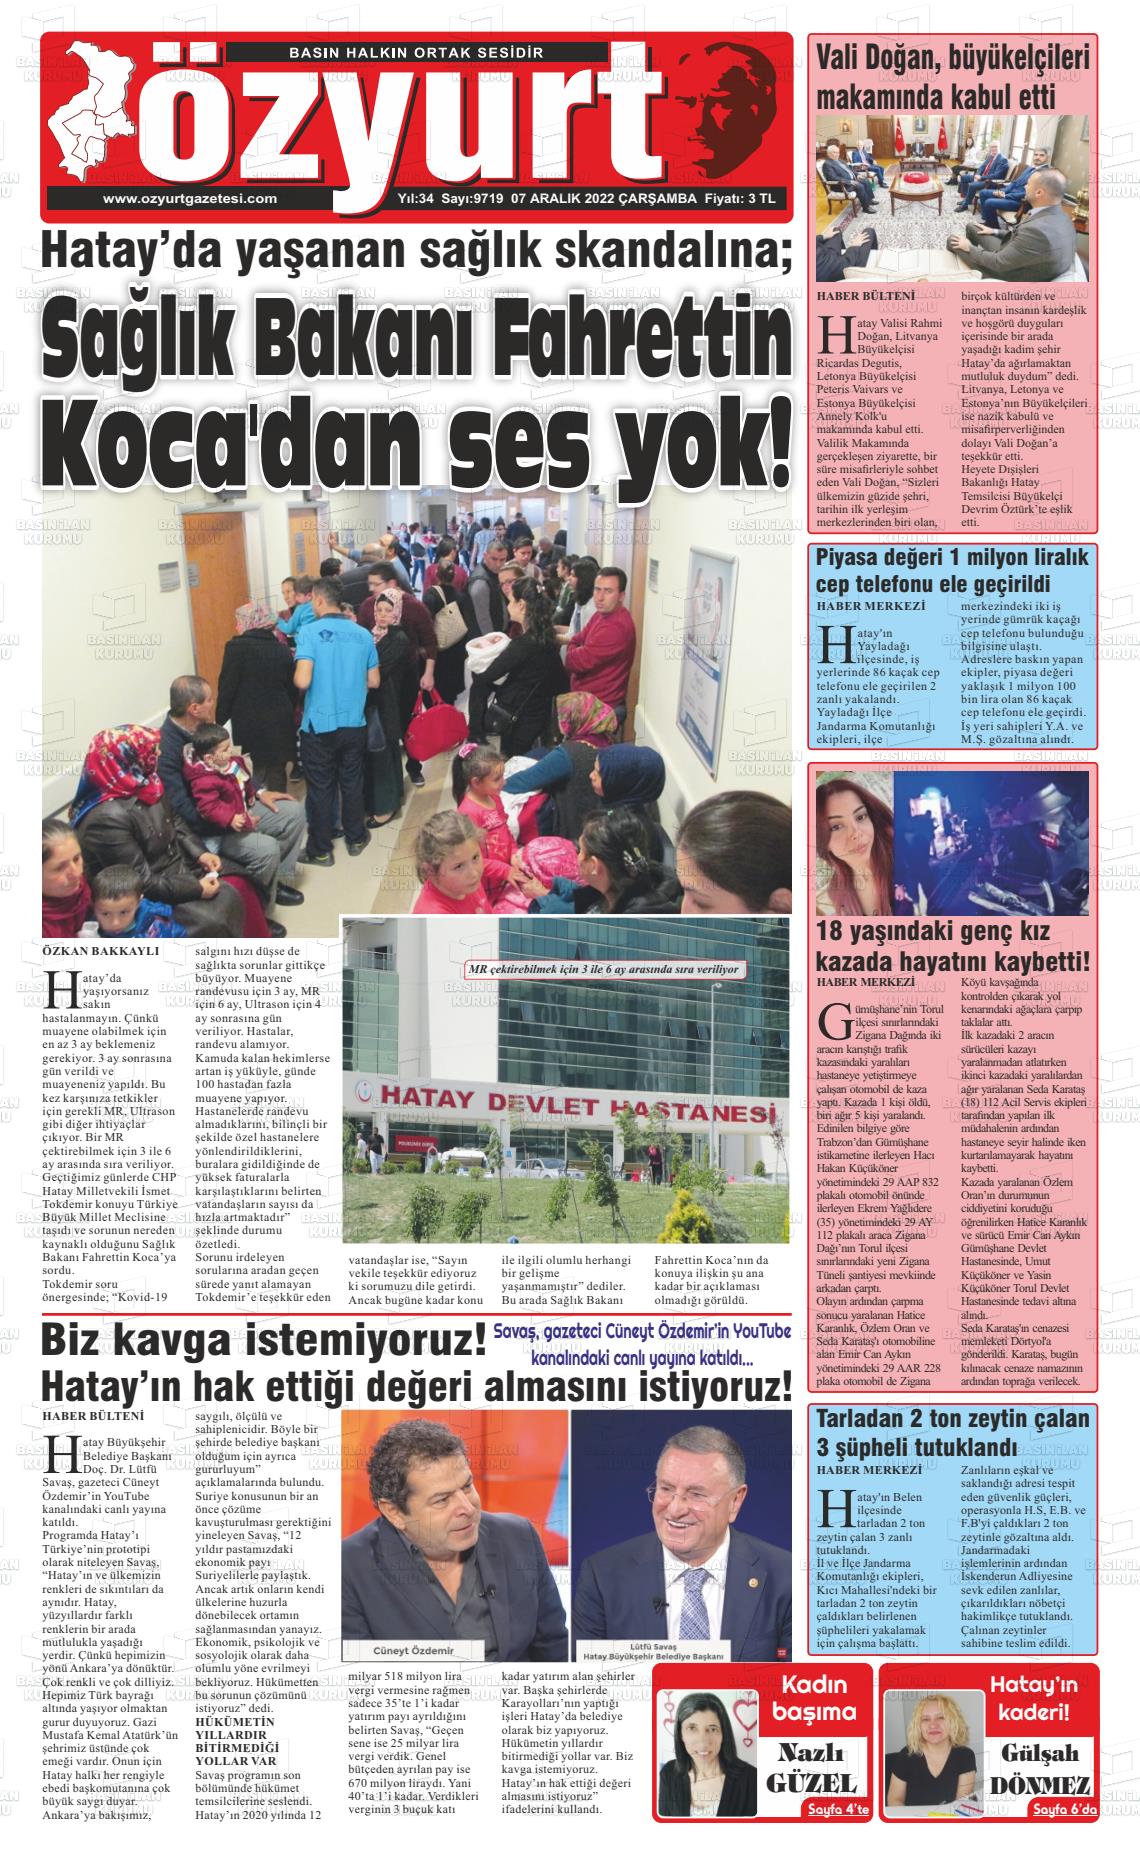 07 Aralık 2022 Özyurt Gazete Manşeti